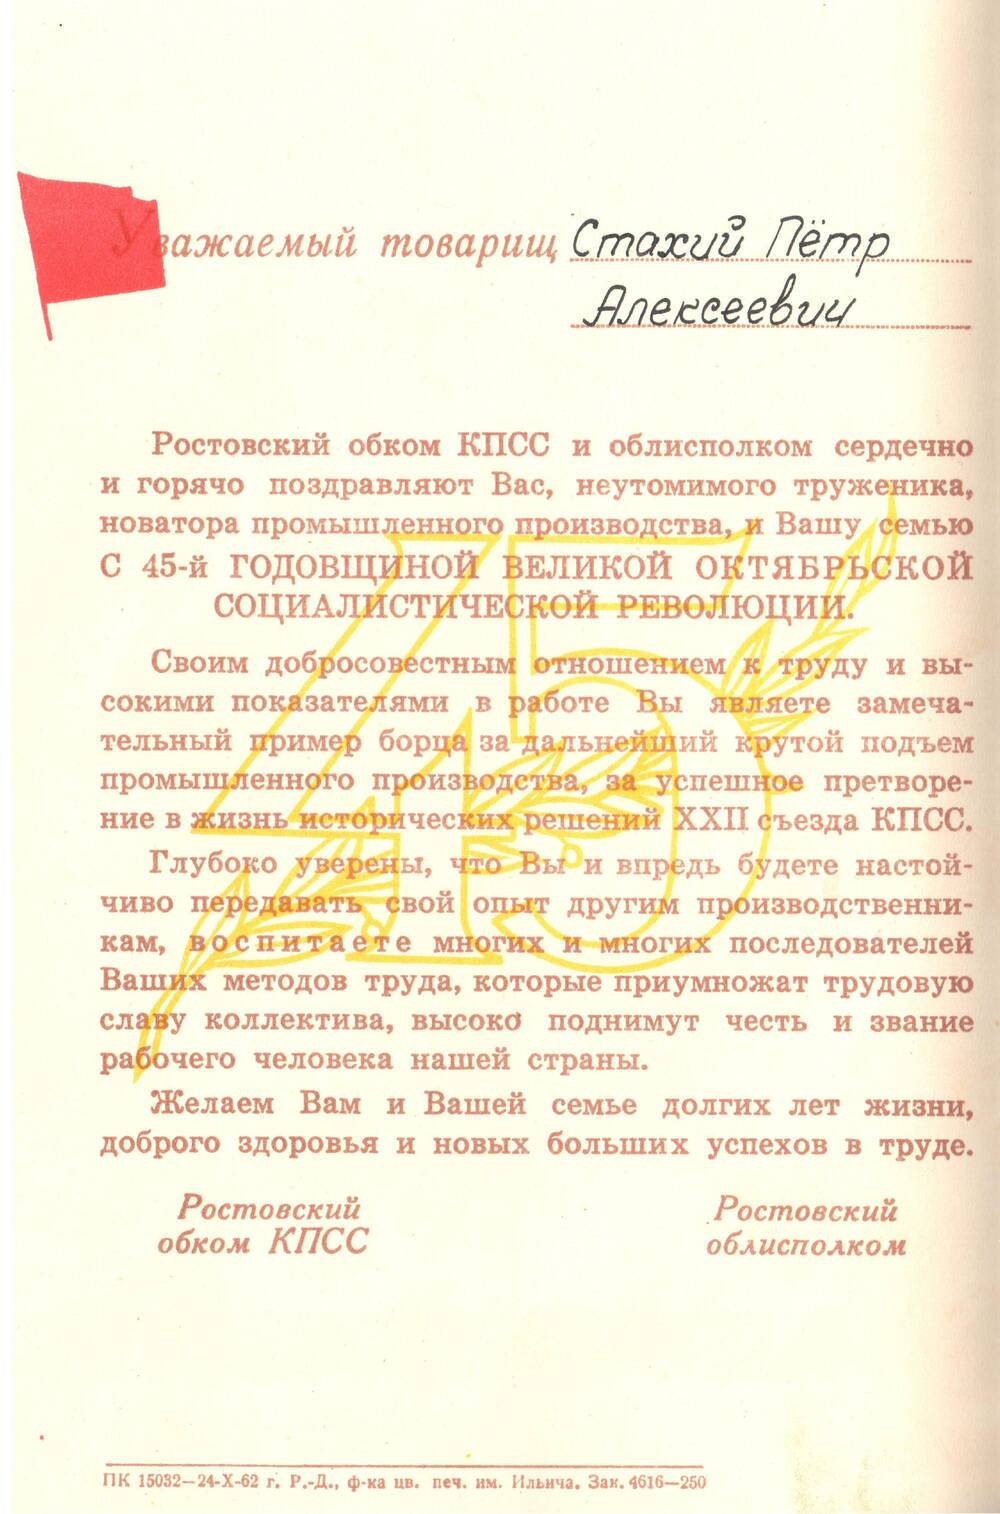 Поздравление Стахий П.А. с 45-й годовщиной Великой Октябрьской Социалистической Революции.